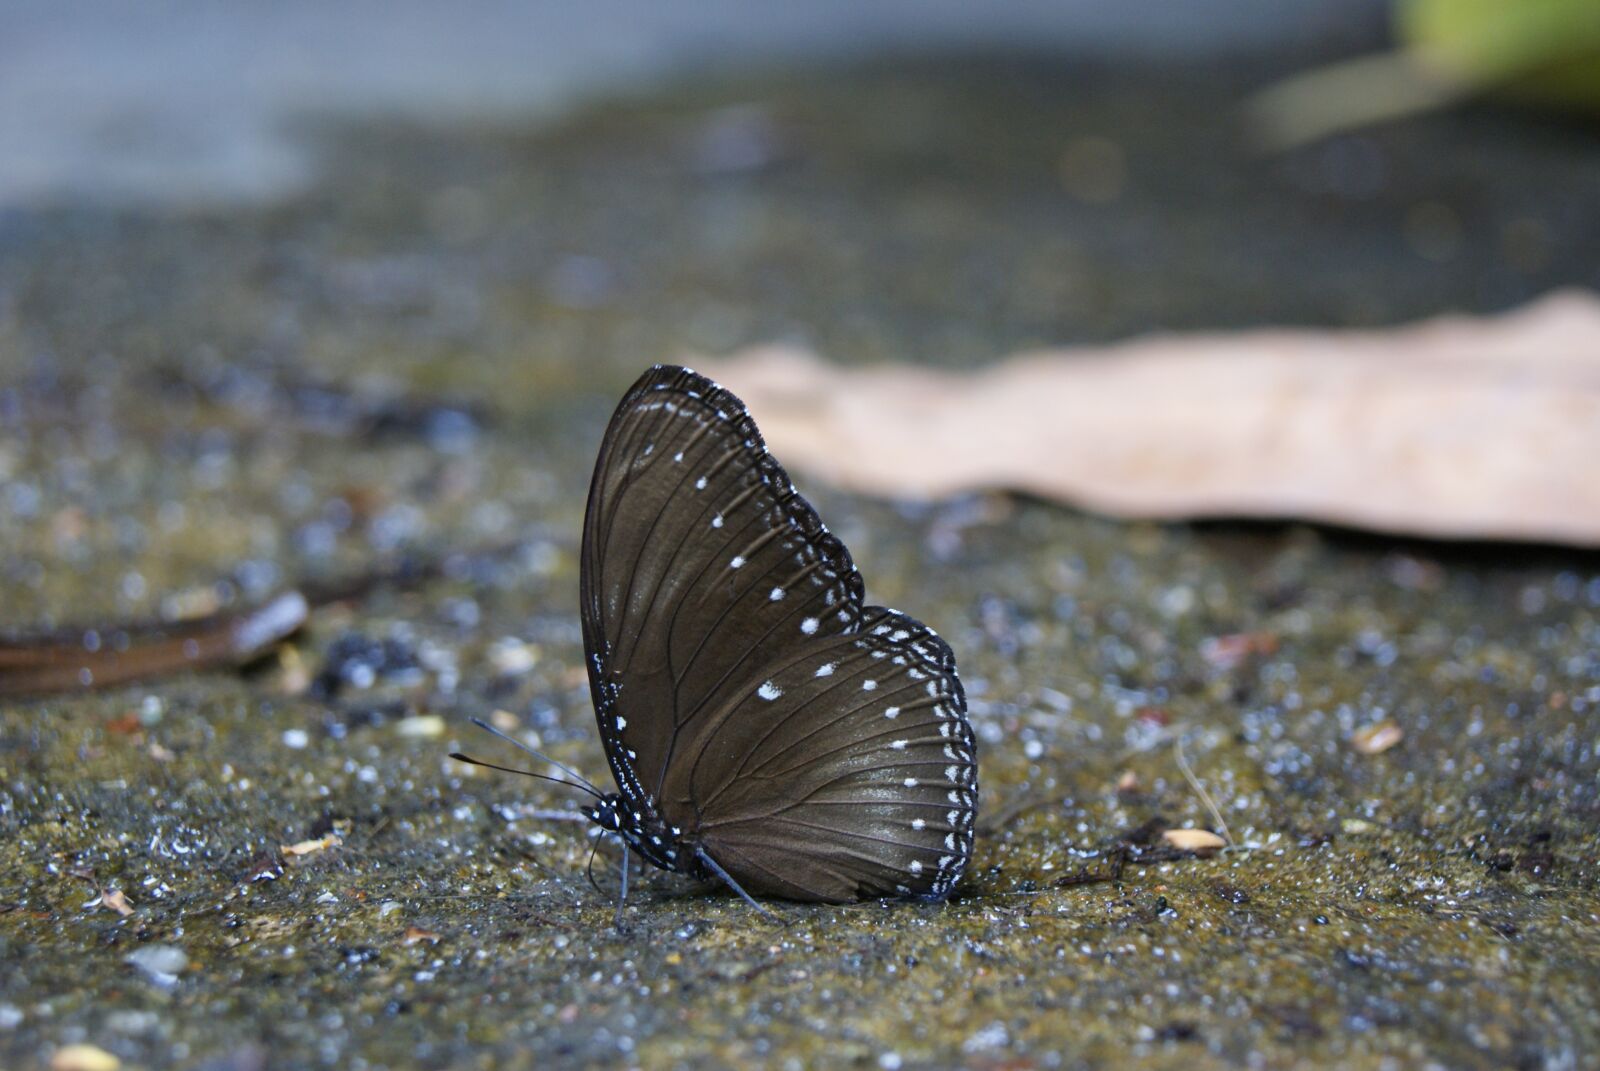 Sony Alpha DSLR-A230 sample photo. Butterfly, malayan eggfly butterfly photography